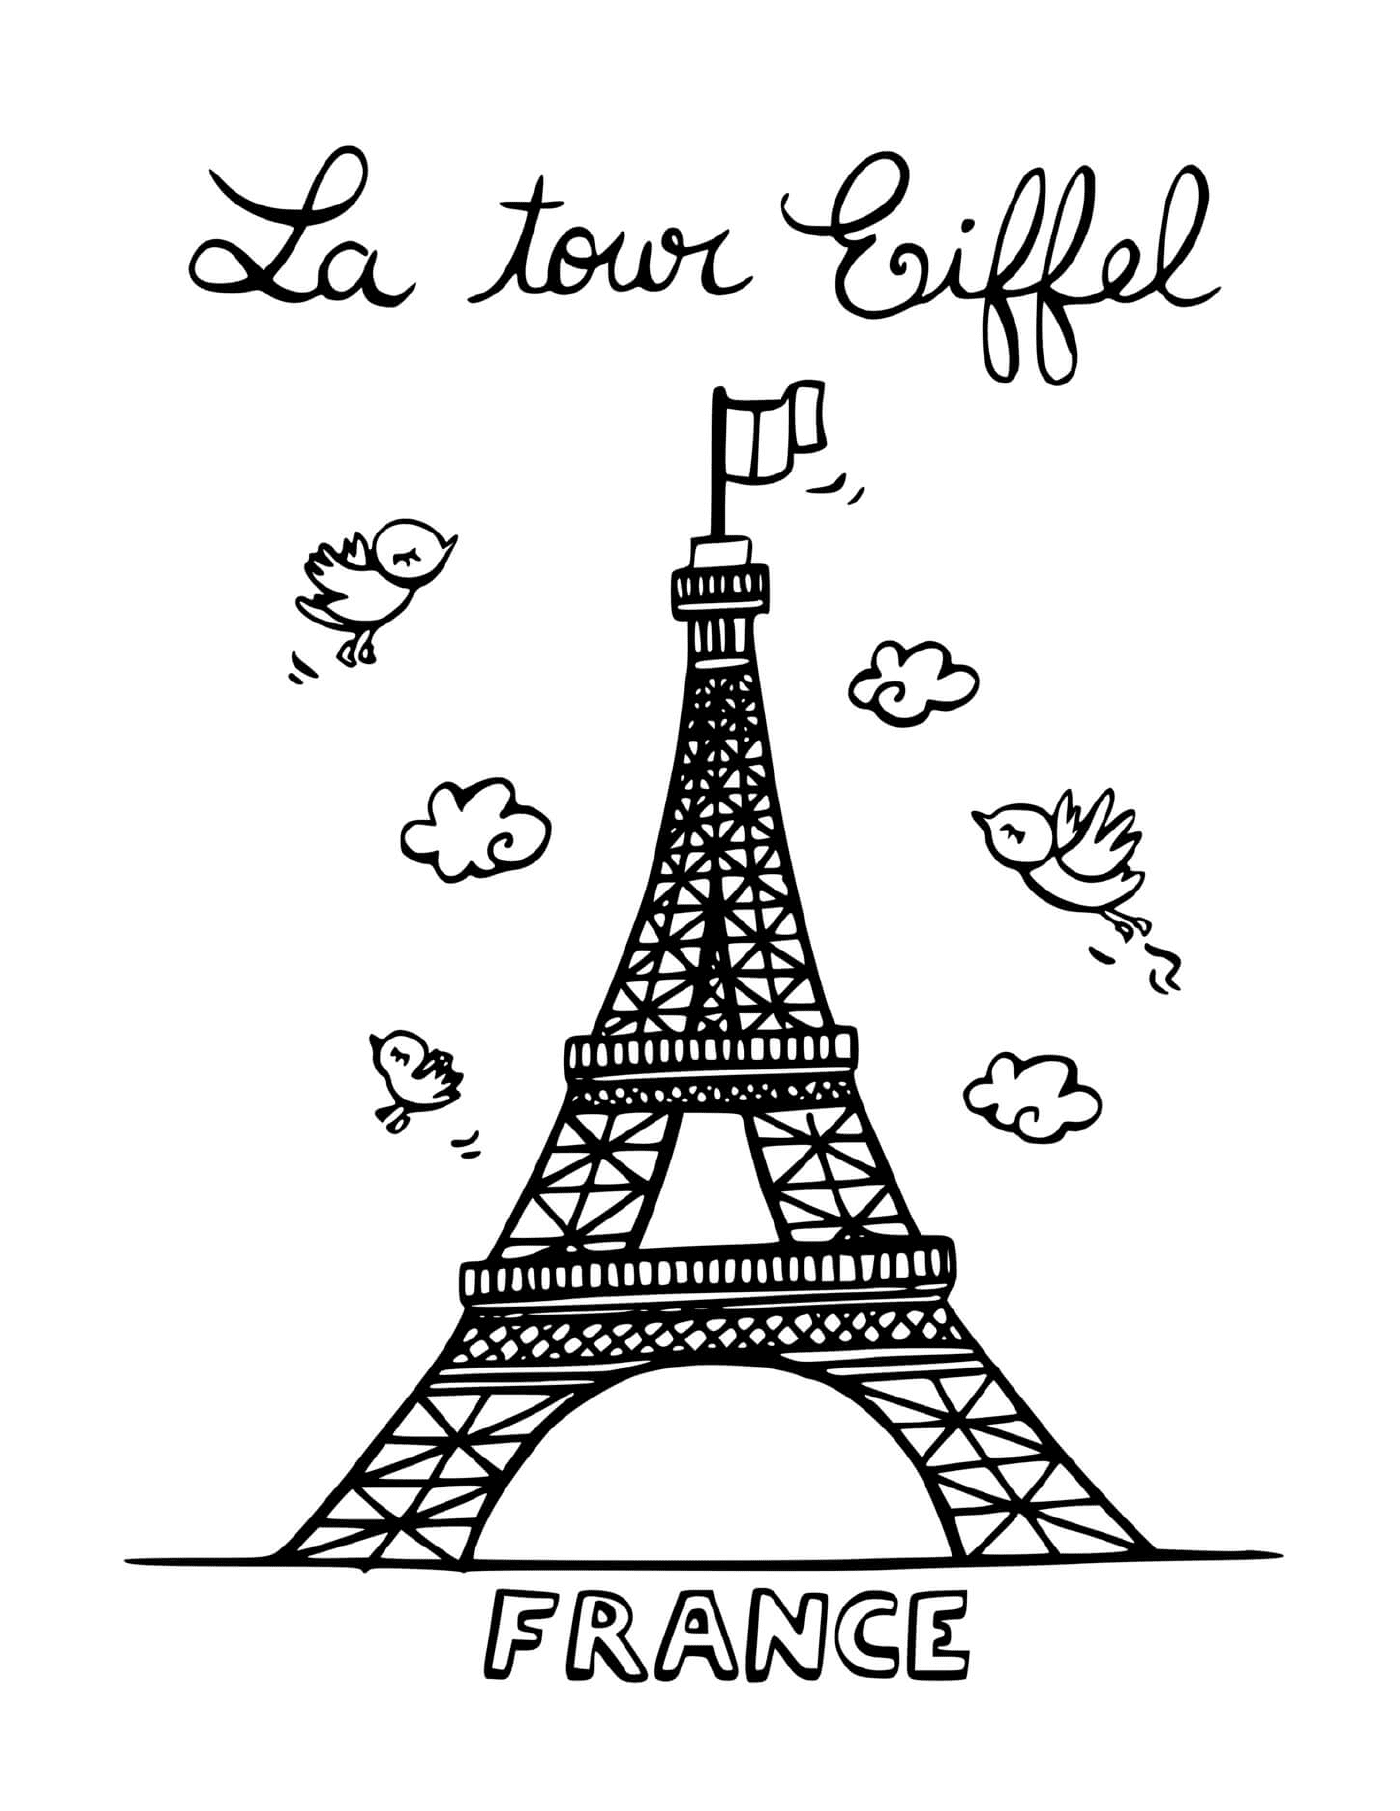  Der Eiffelturm von Paris in Frankreich 